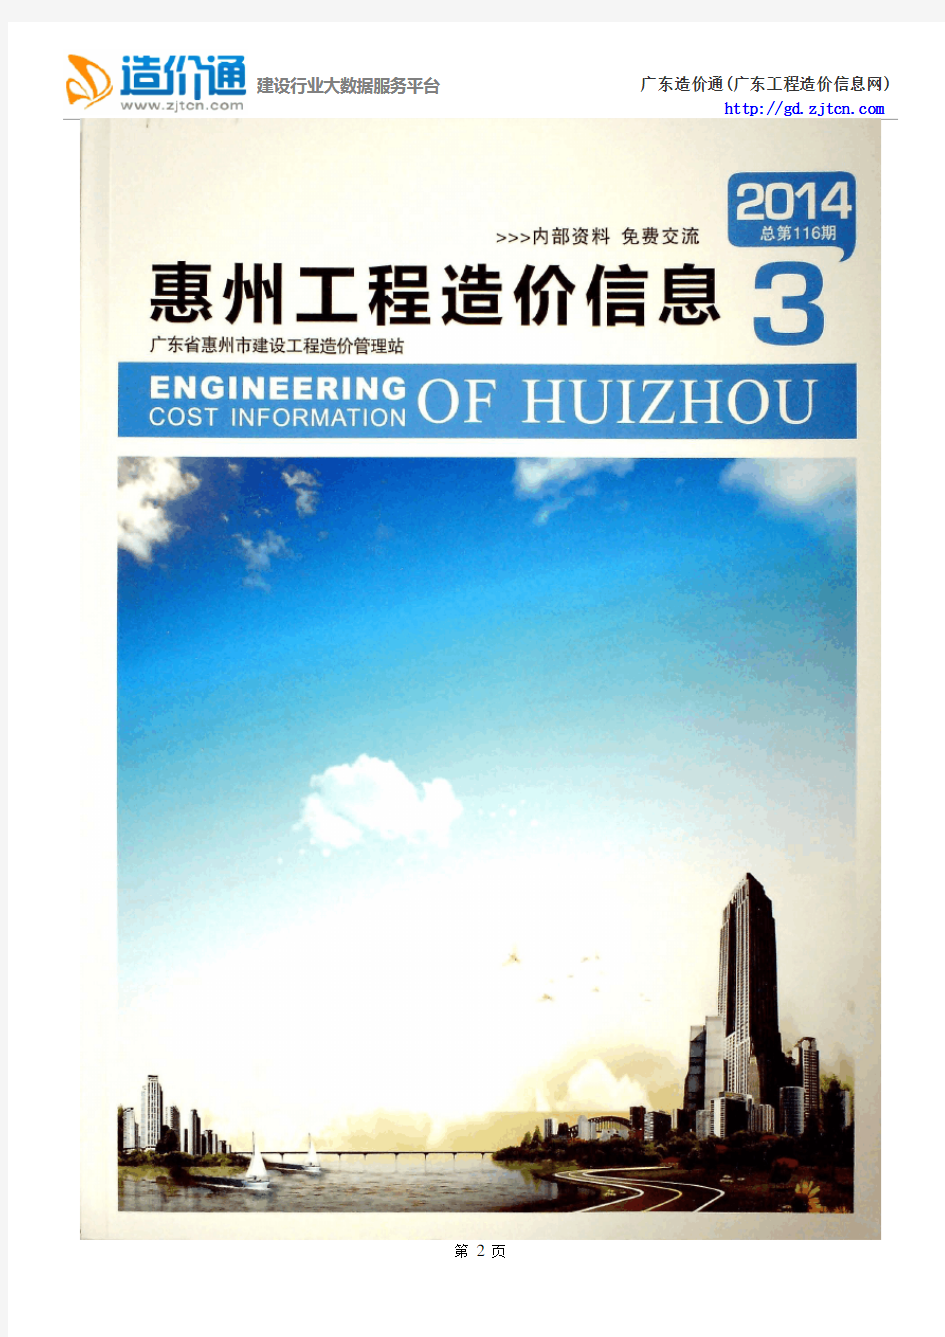 惠州信息价,最新最全惠州工程造价信息网期刊下载-造价通